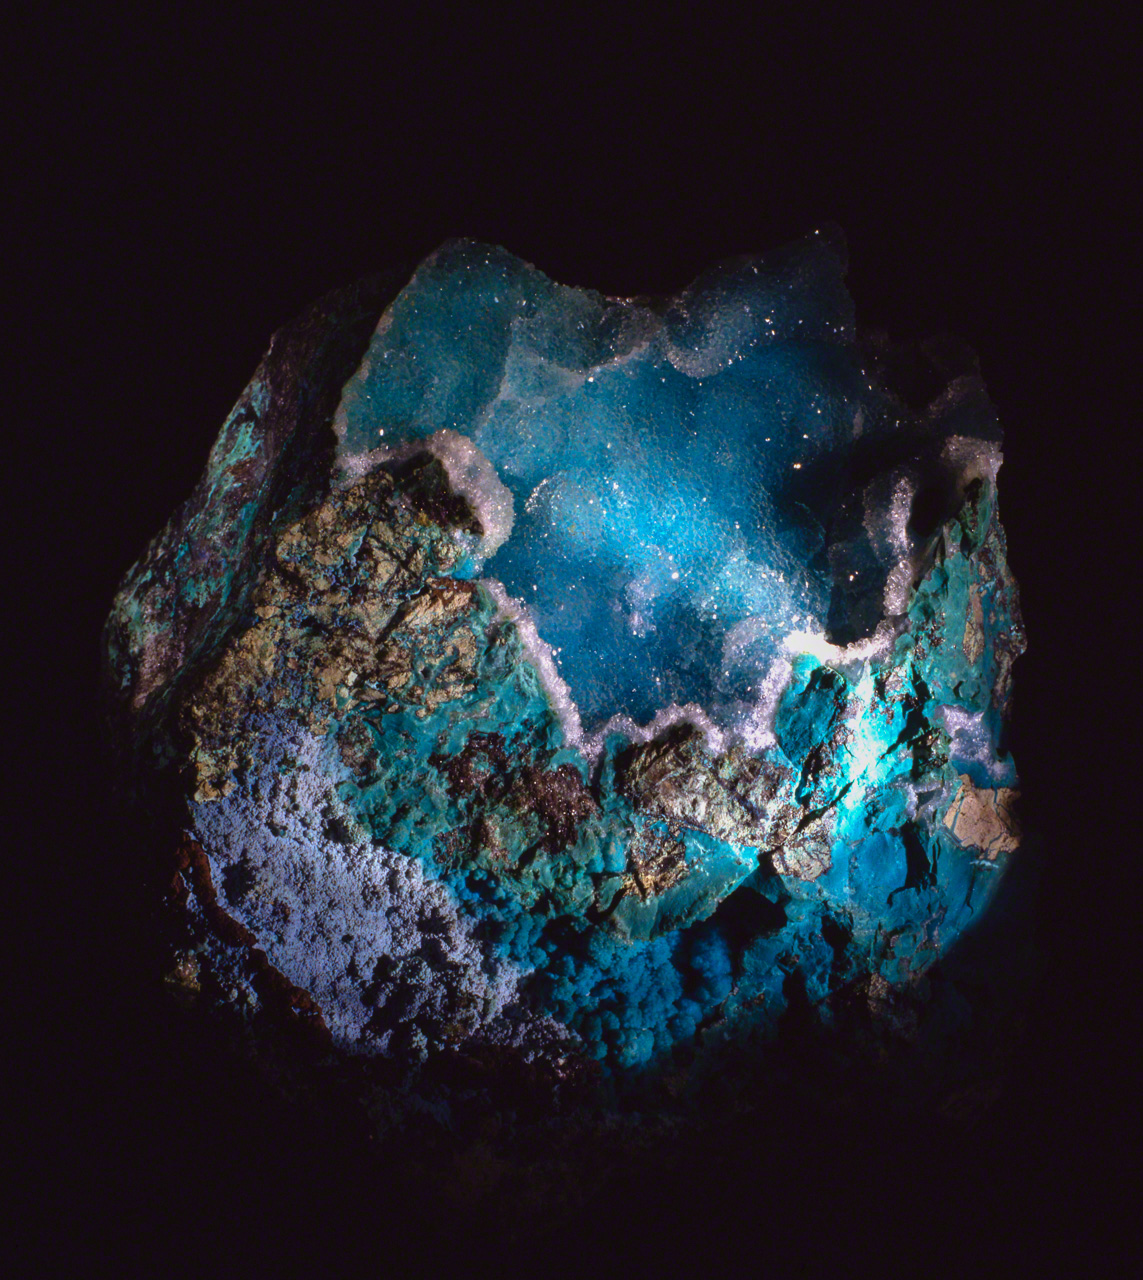 地球被称作“蓝色星球”“水的行星”。神秘的矿物硅孔雀石让人联想到从太空俯瞰的地球